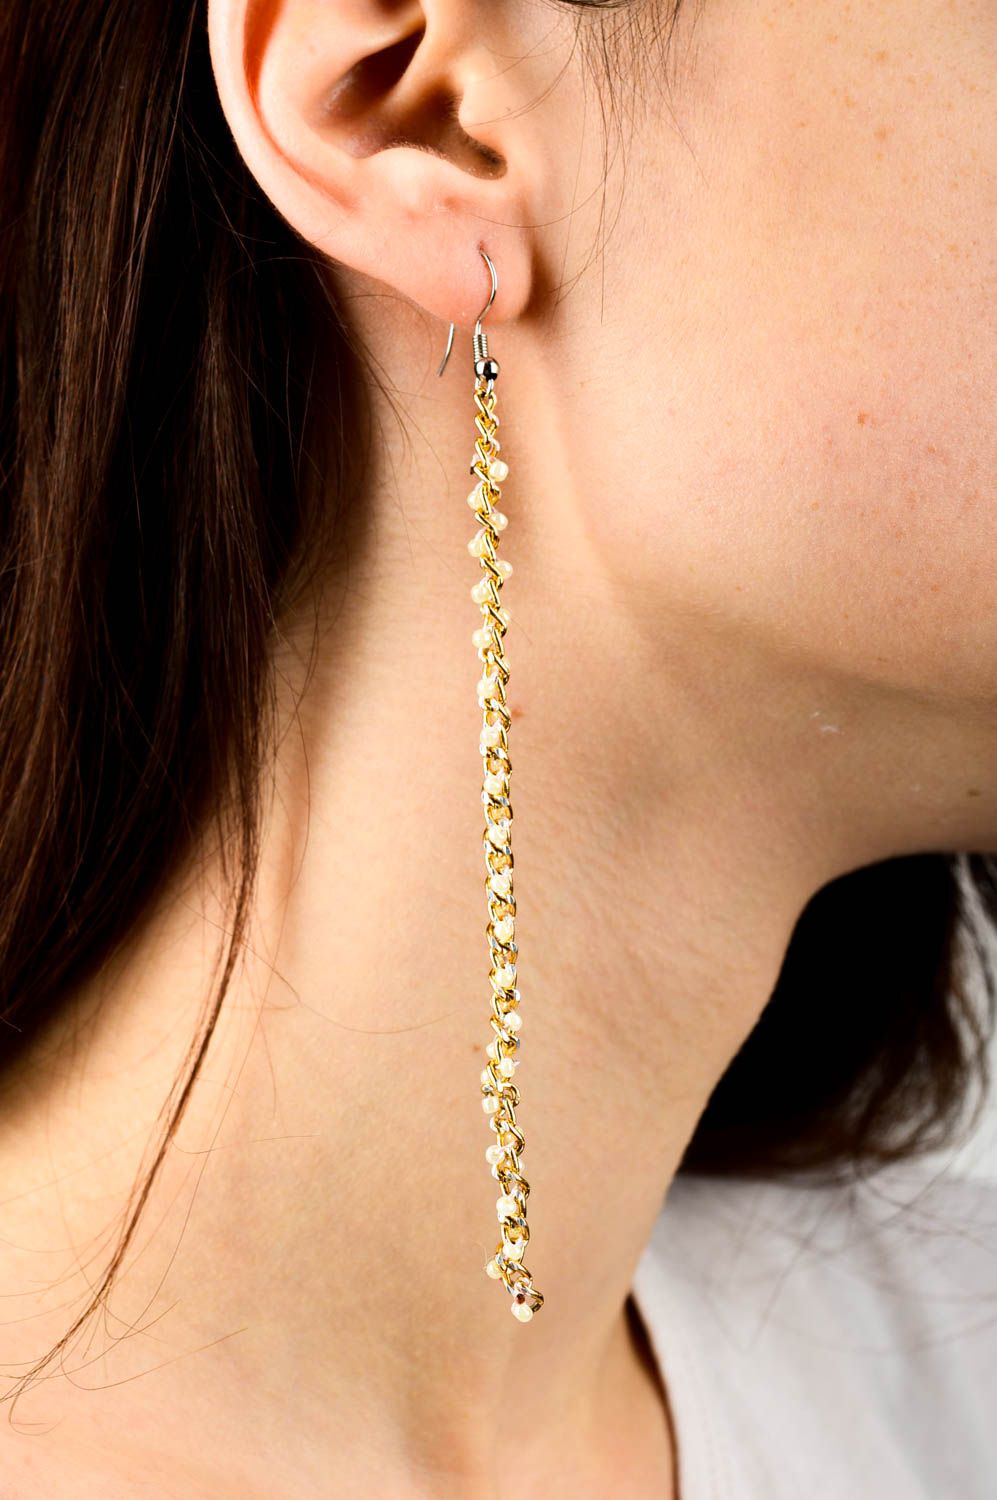 Beaded earrings women long earrings designer earrings evening accessories  photo 2